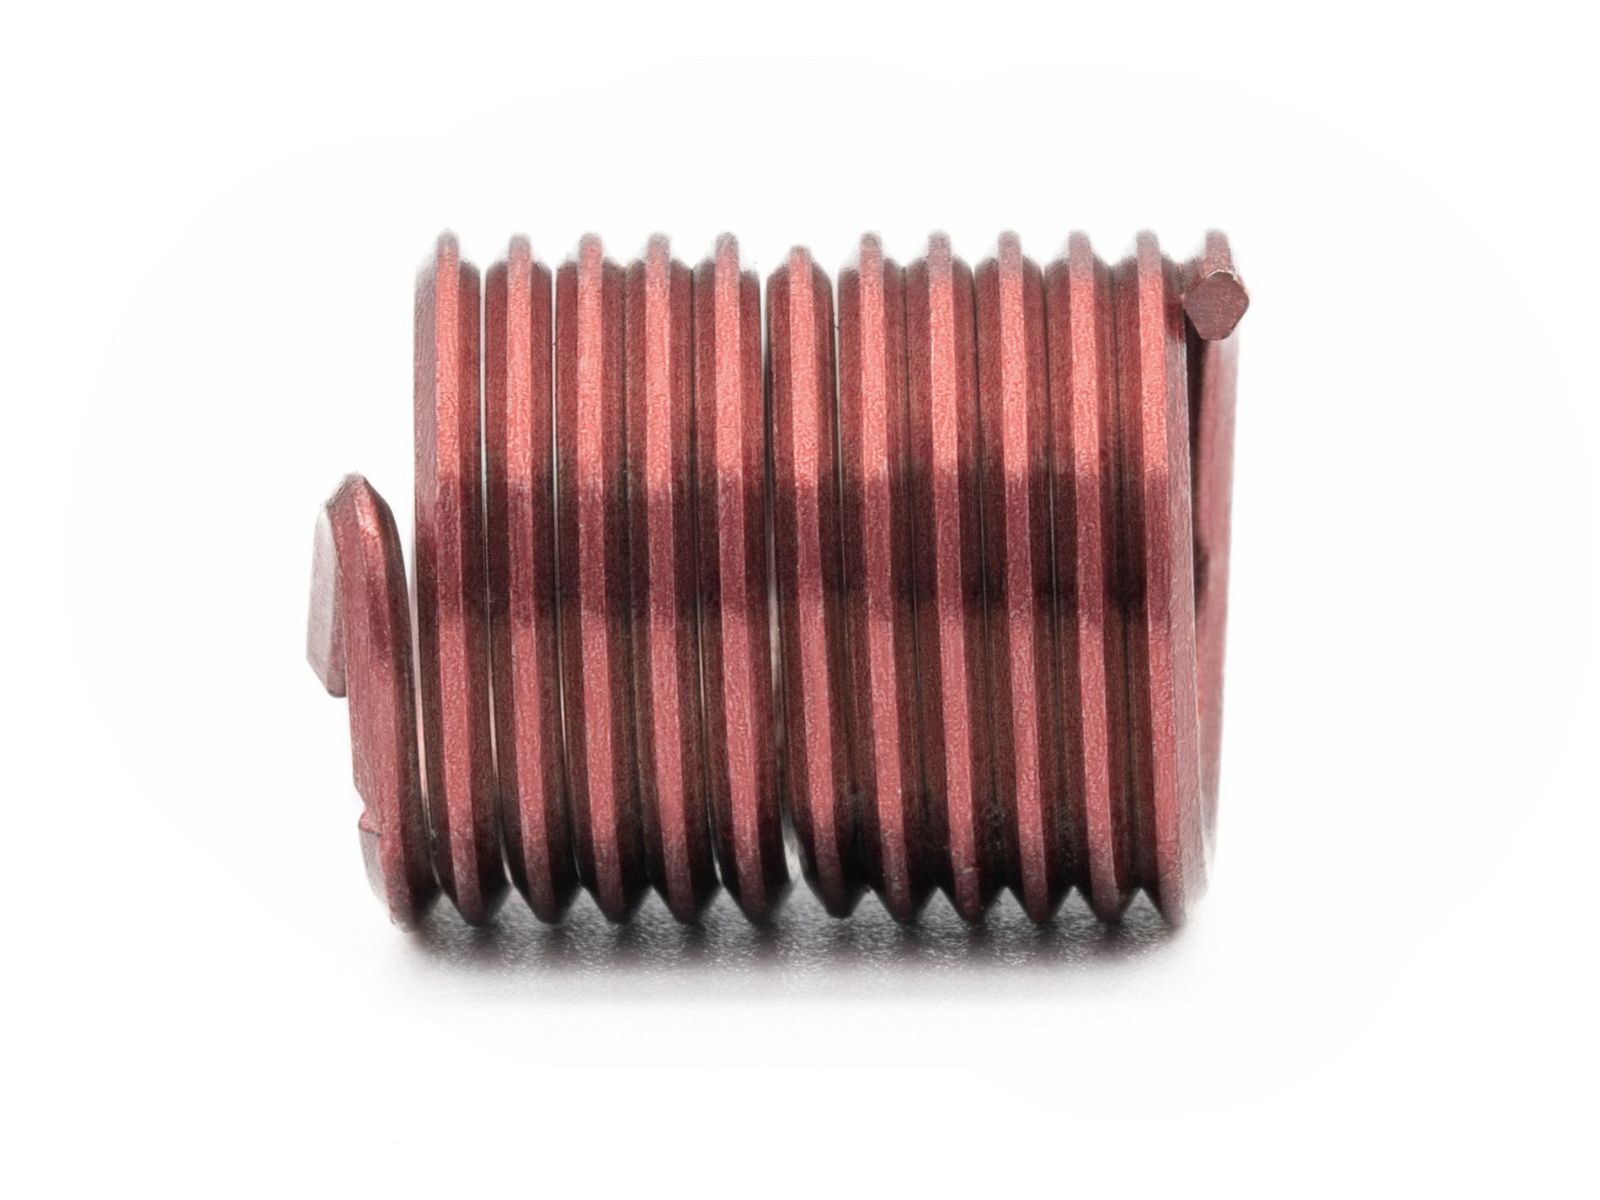 BaerCoil Wire Thread Inserts M 8 x 1.25 - 2.0 D (16 mm) - screw grip (screw locking) - 100 pcs.